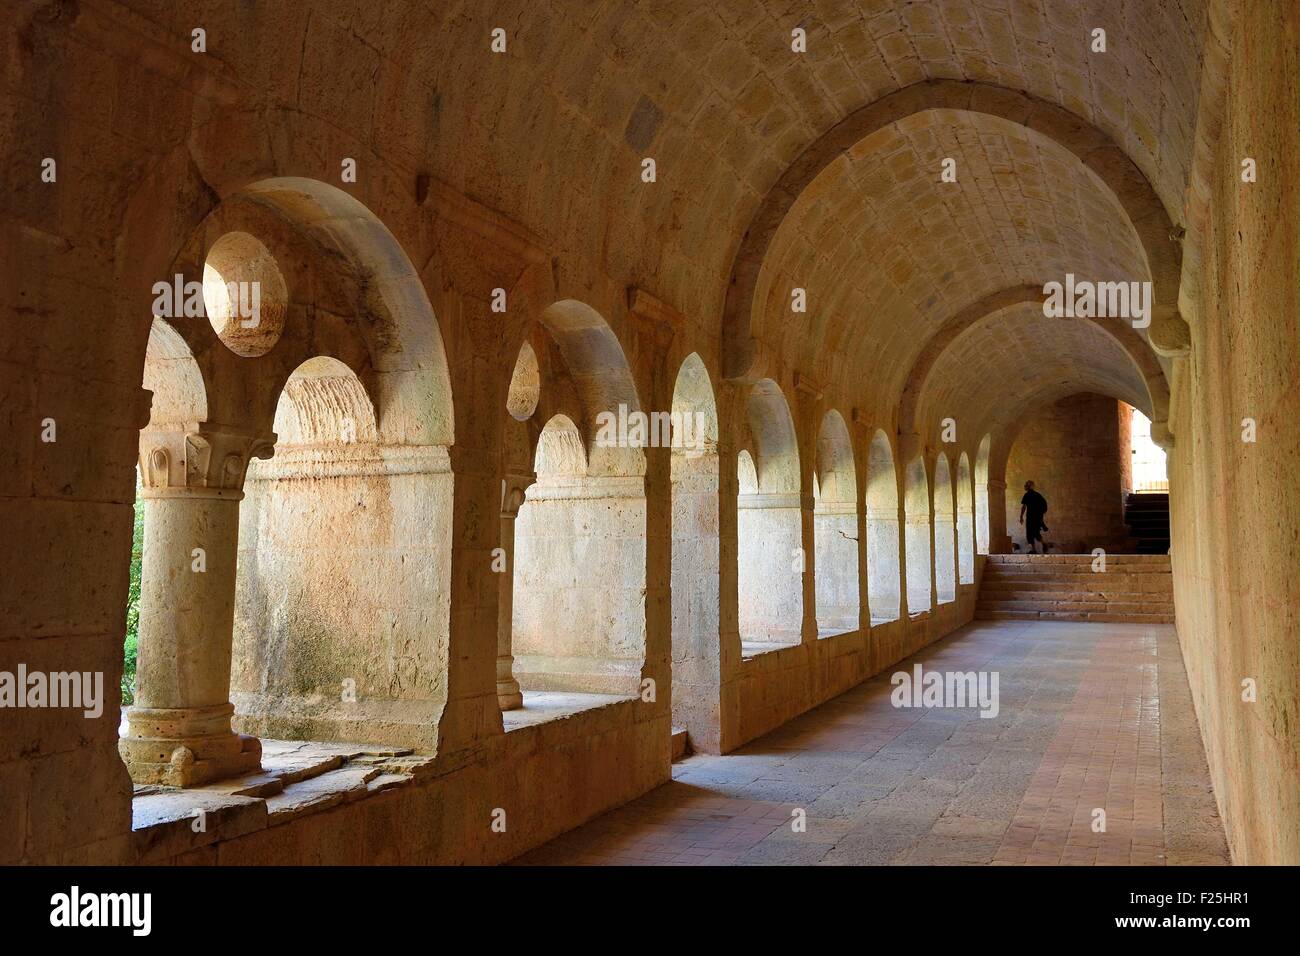 France, Var, the Thoronet cistercian abbey, the cloister Stock Photo